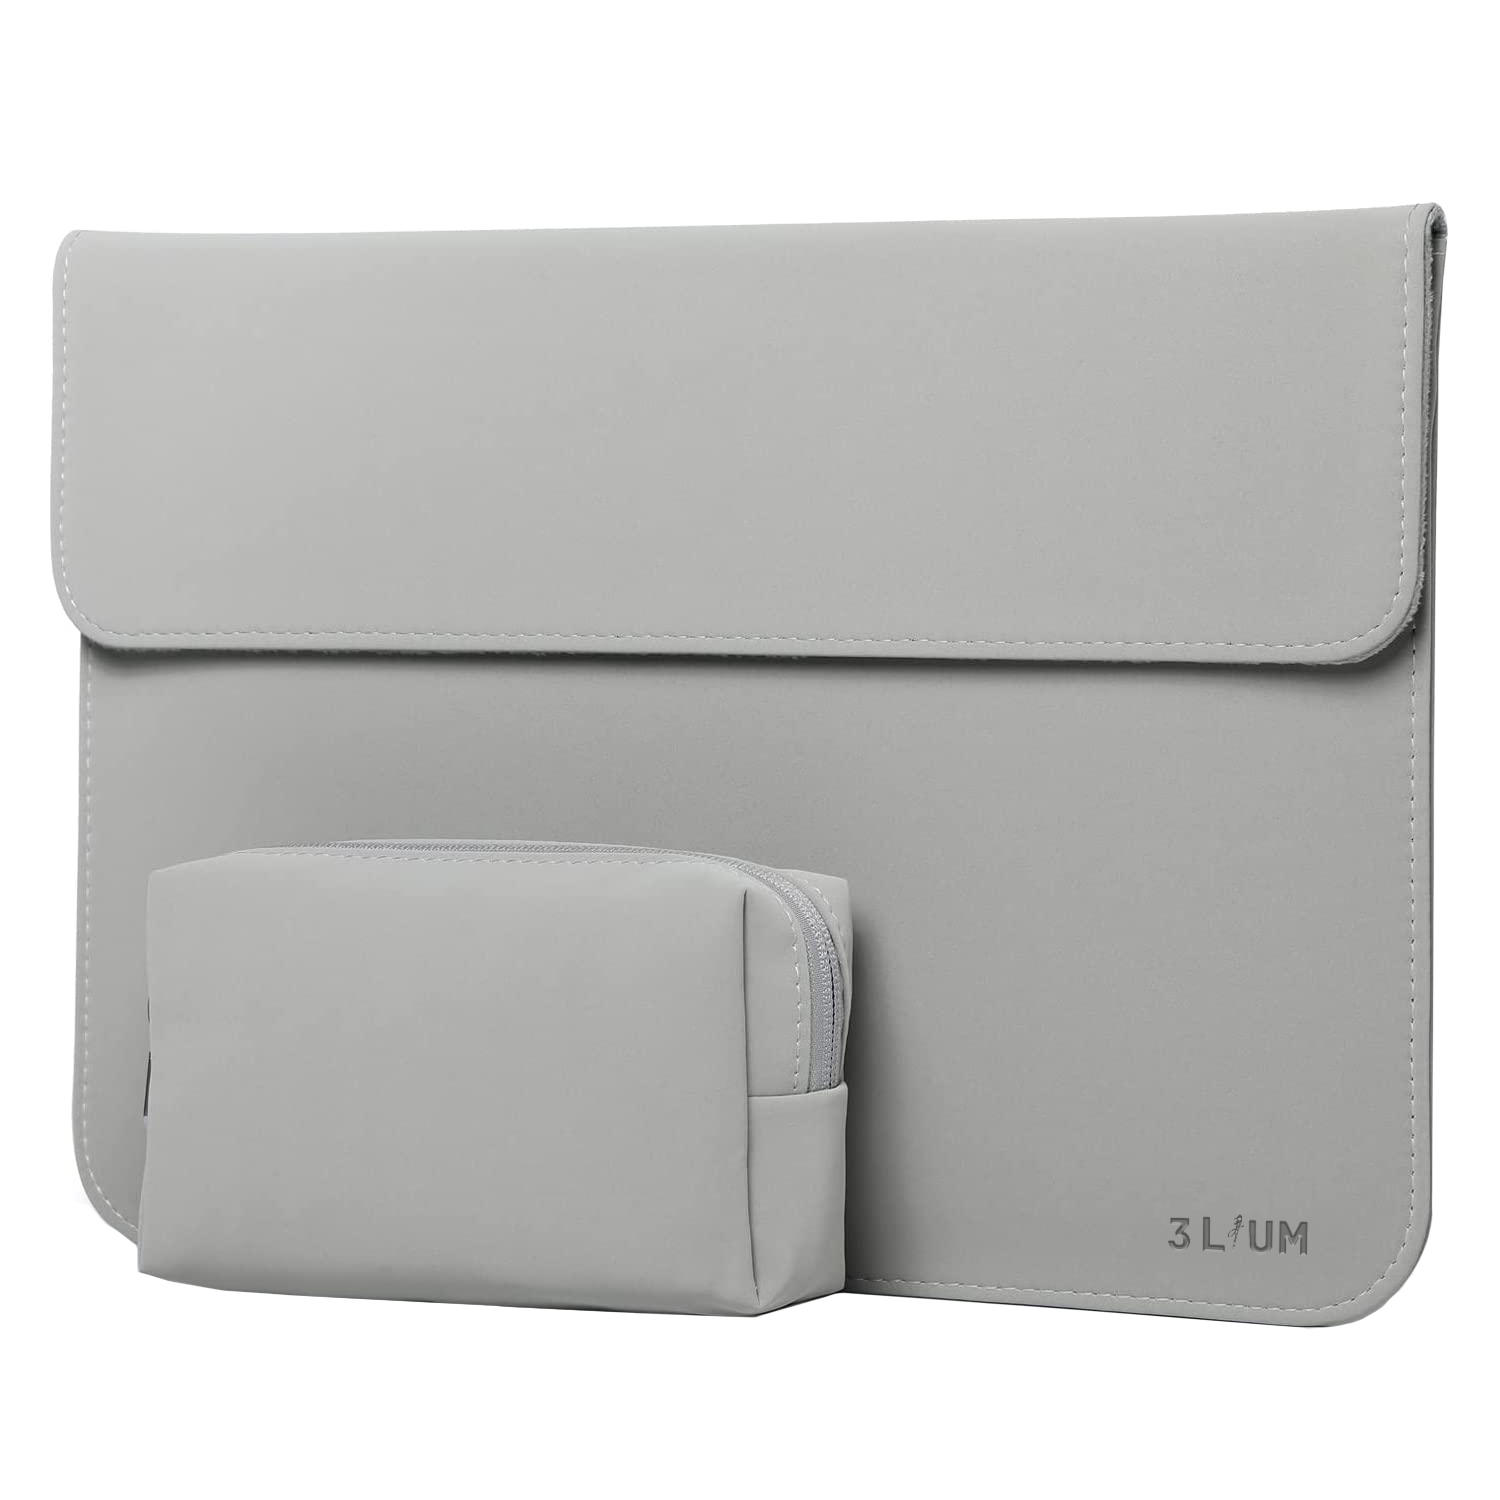 کاور لپ تاپ تری لیوم مدل Point مناسب برای لپ تاپ 16 اینچی به همراه کیف لوازم جانبی